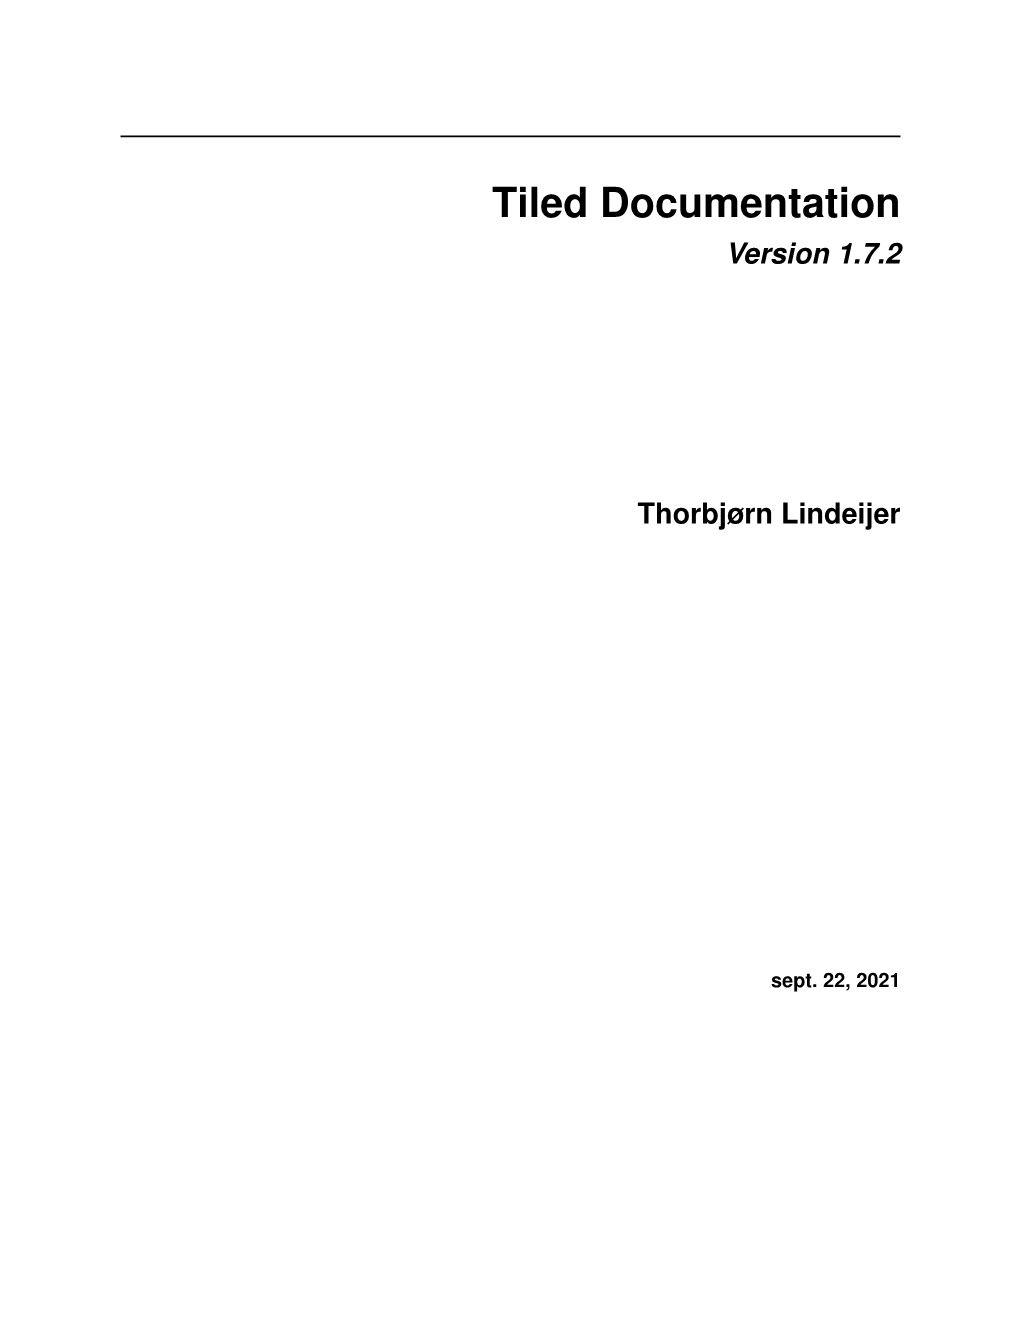 Tiled Documentation Version 1.7.2 Thorbjørn Lindeijer